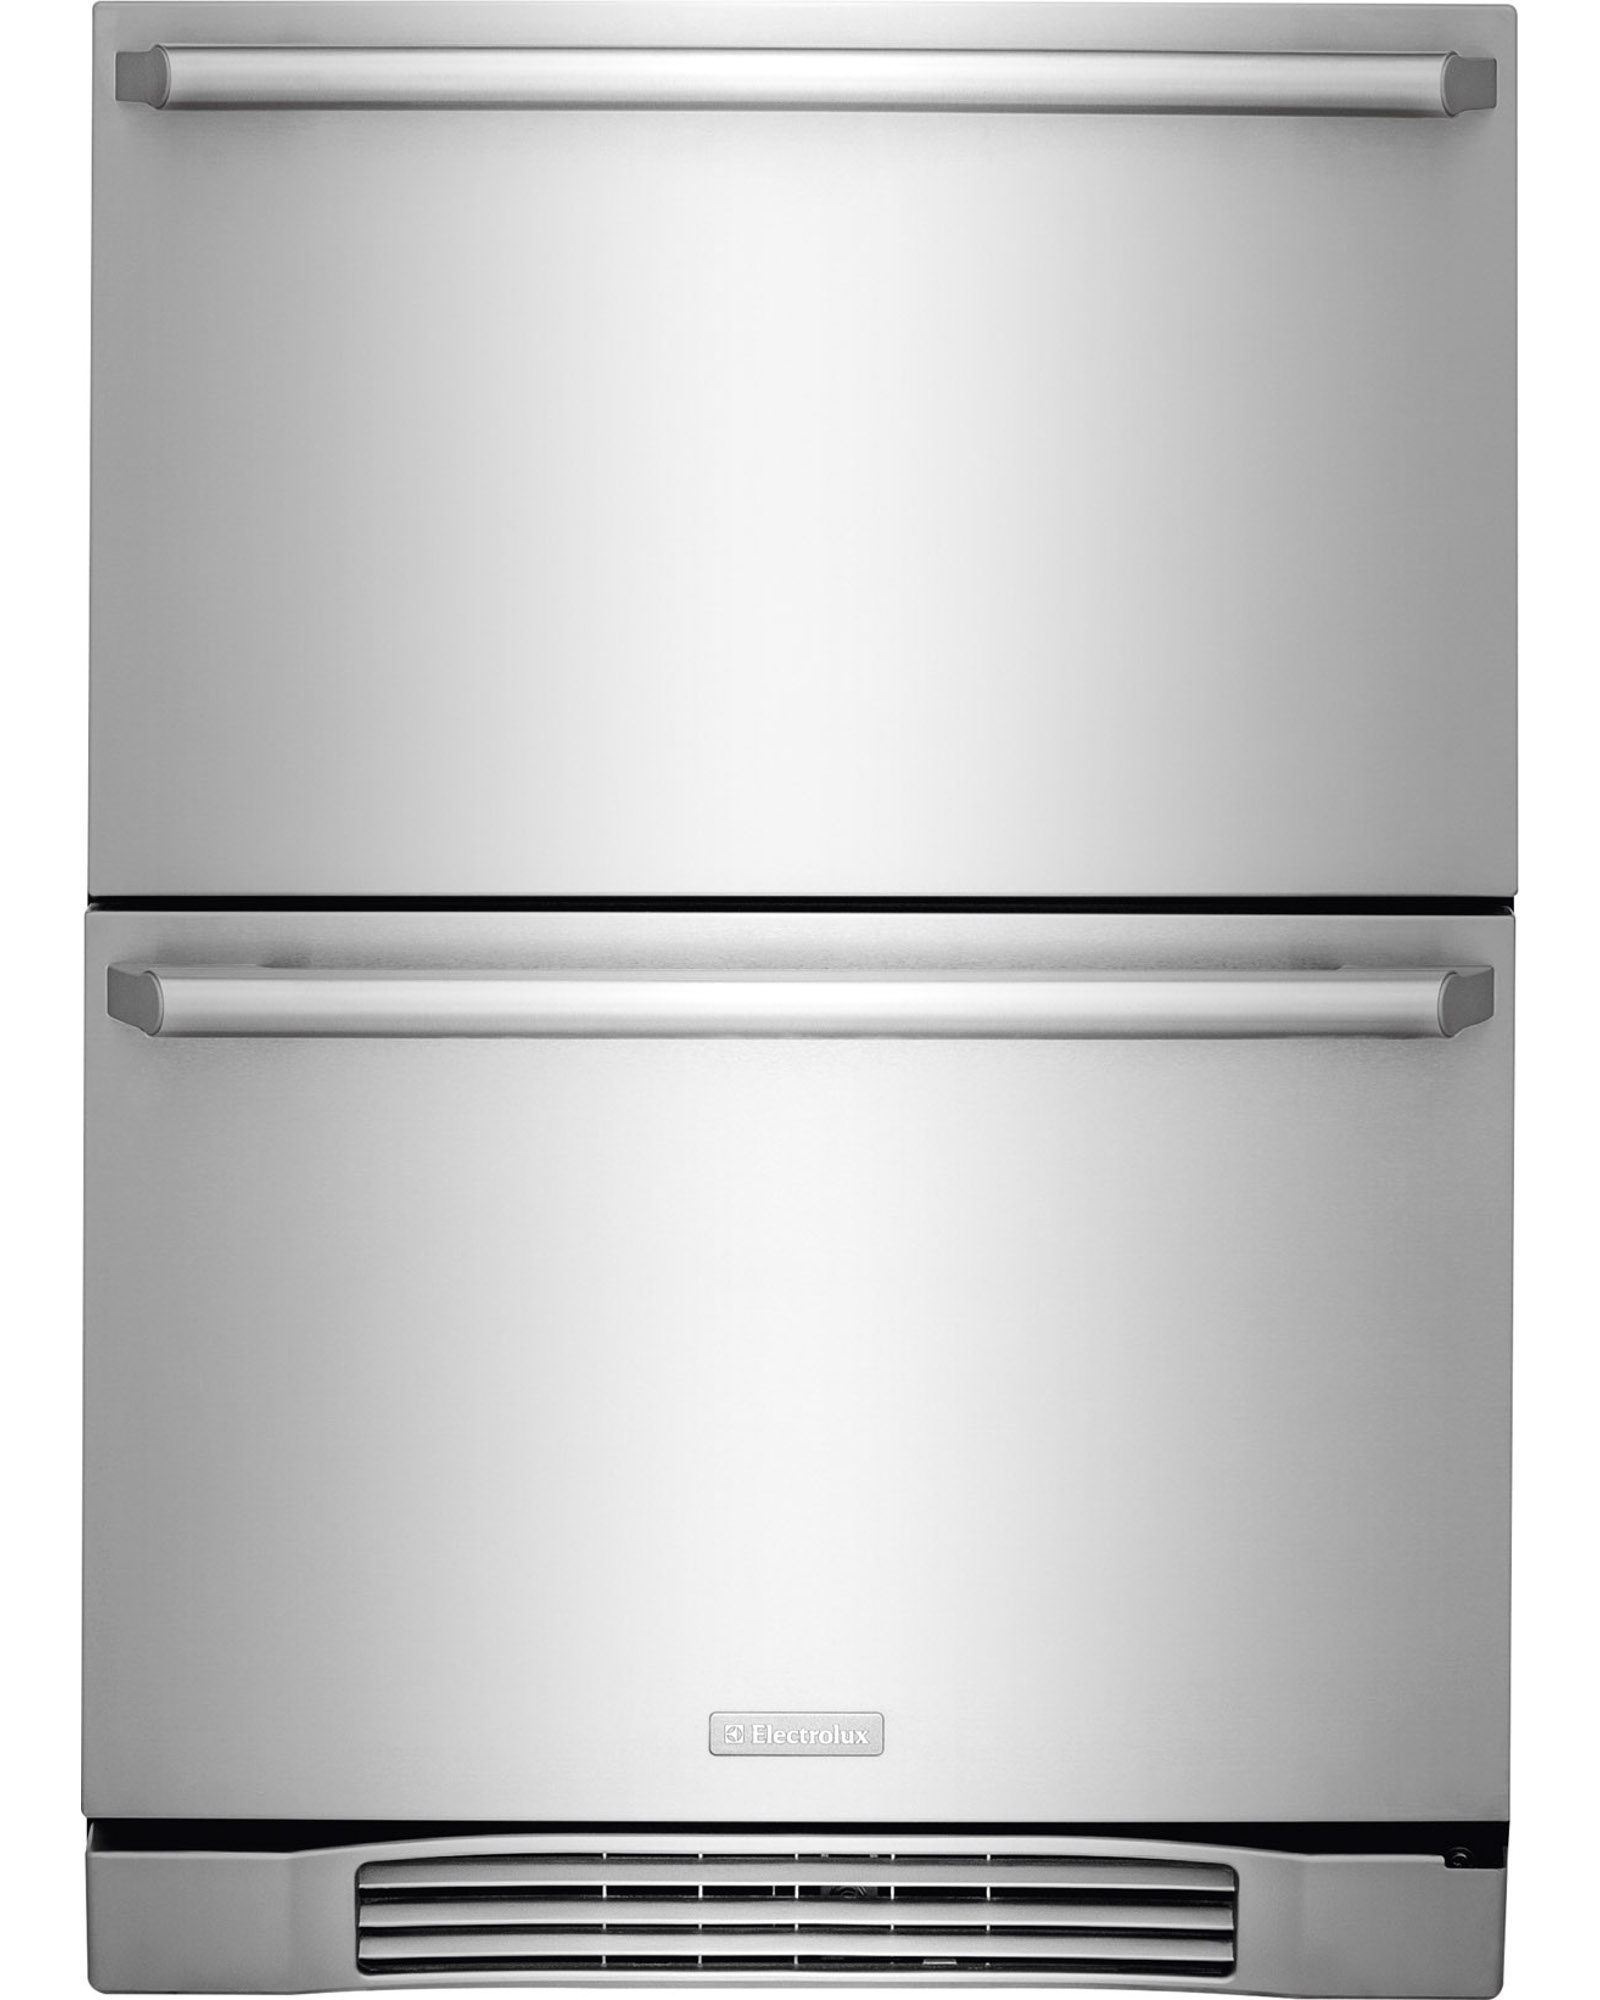 Two-Drawer Refrigerator logo